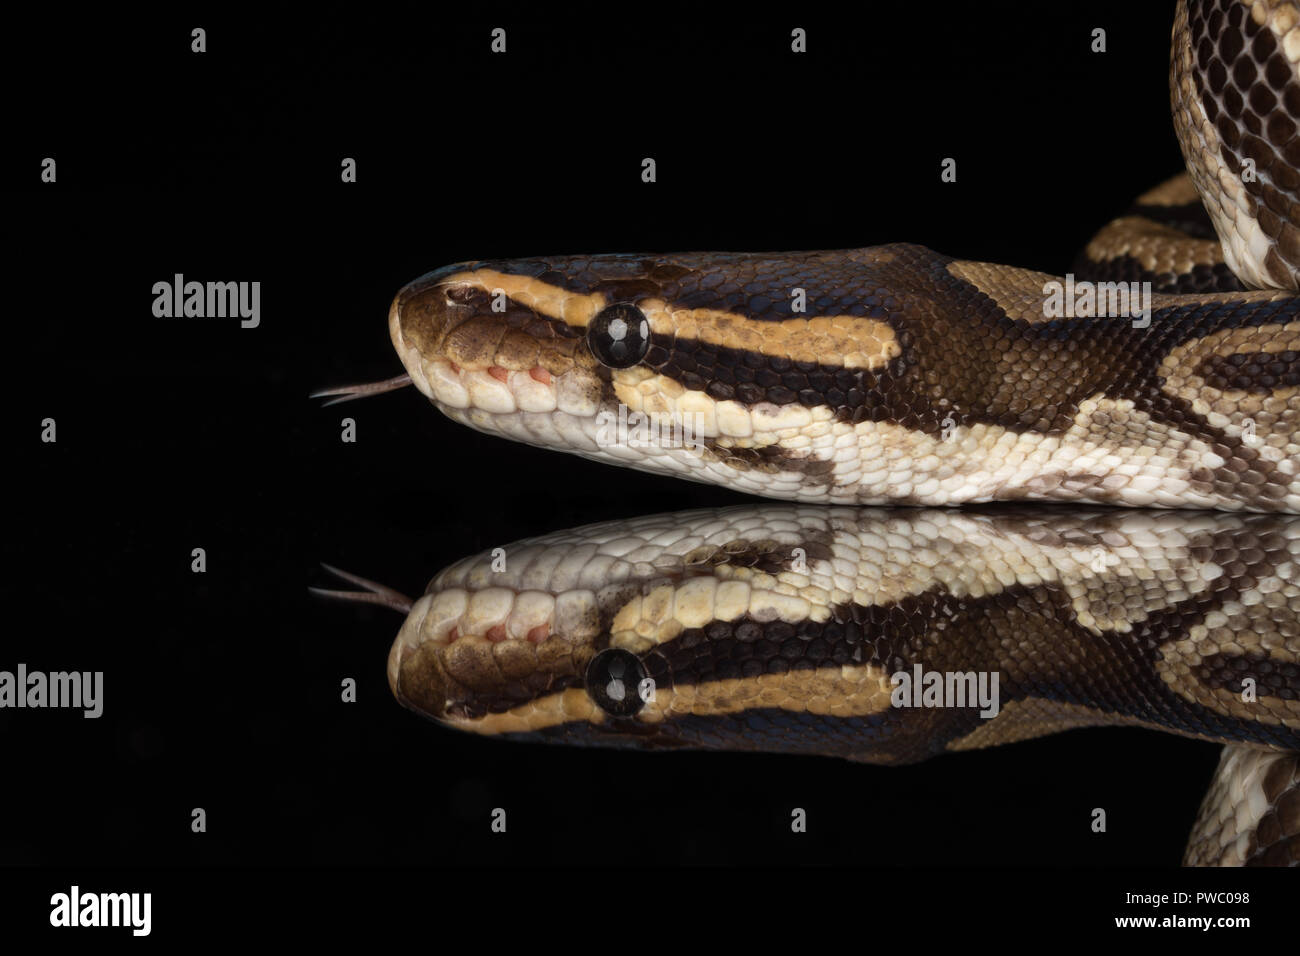 Royal python, auch genannt den Ball python (Python regius), eine afrikanische Reptil Schlange Arten Stockfoto